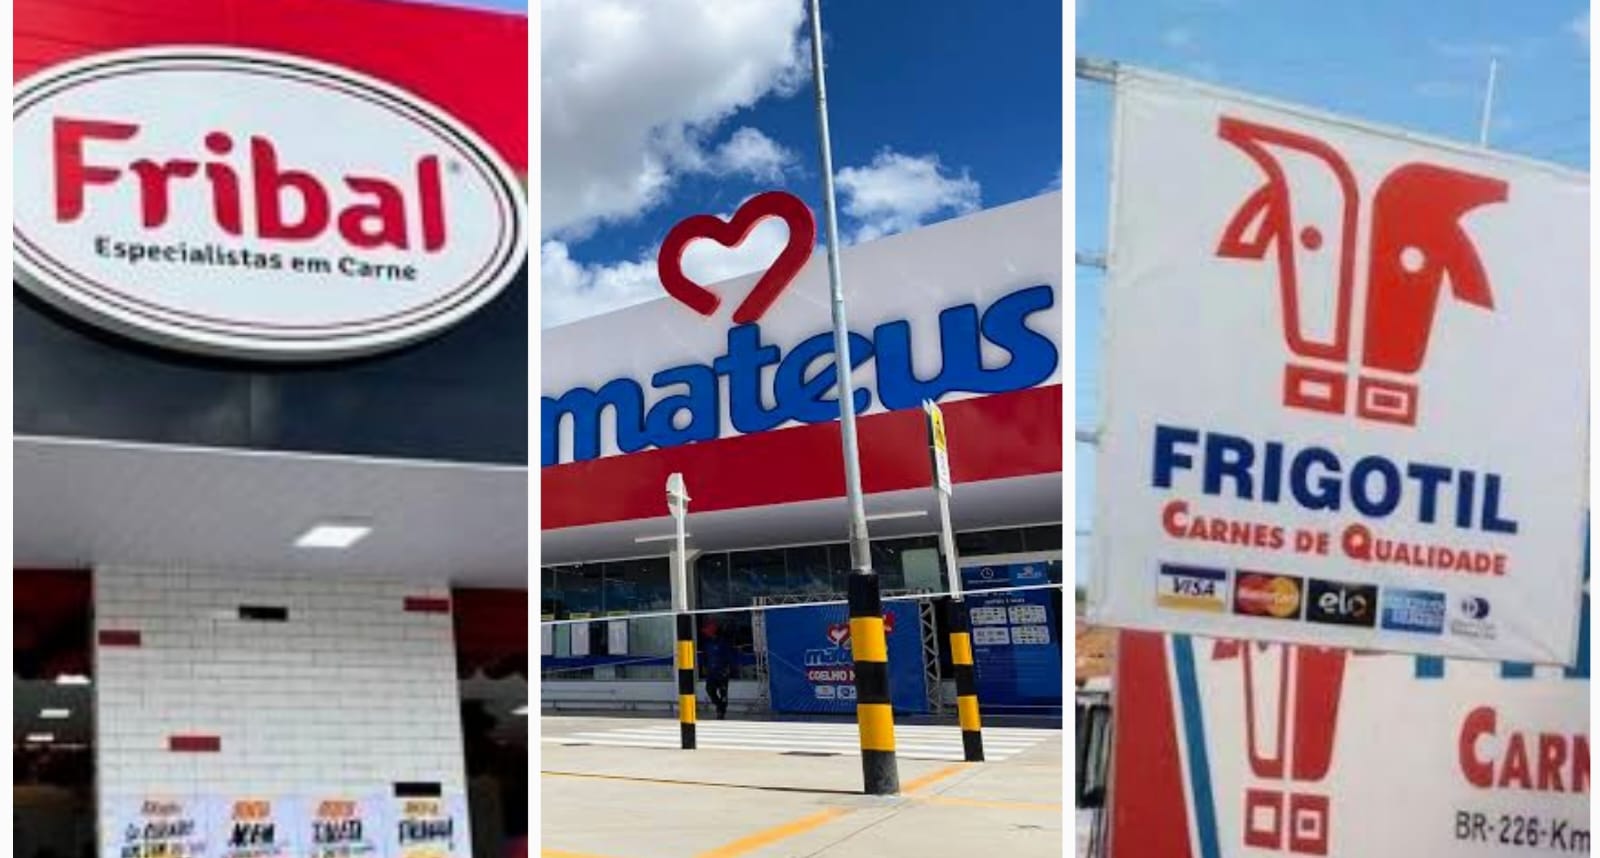 Ministério Público investiga, Mateus Supermercados, Fribal e Frigotil por suposto ‘cartel da carne bovina’ no MA